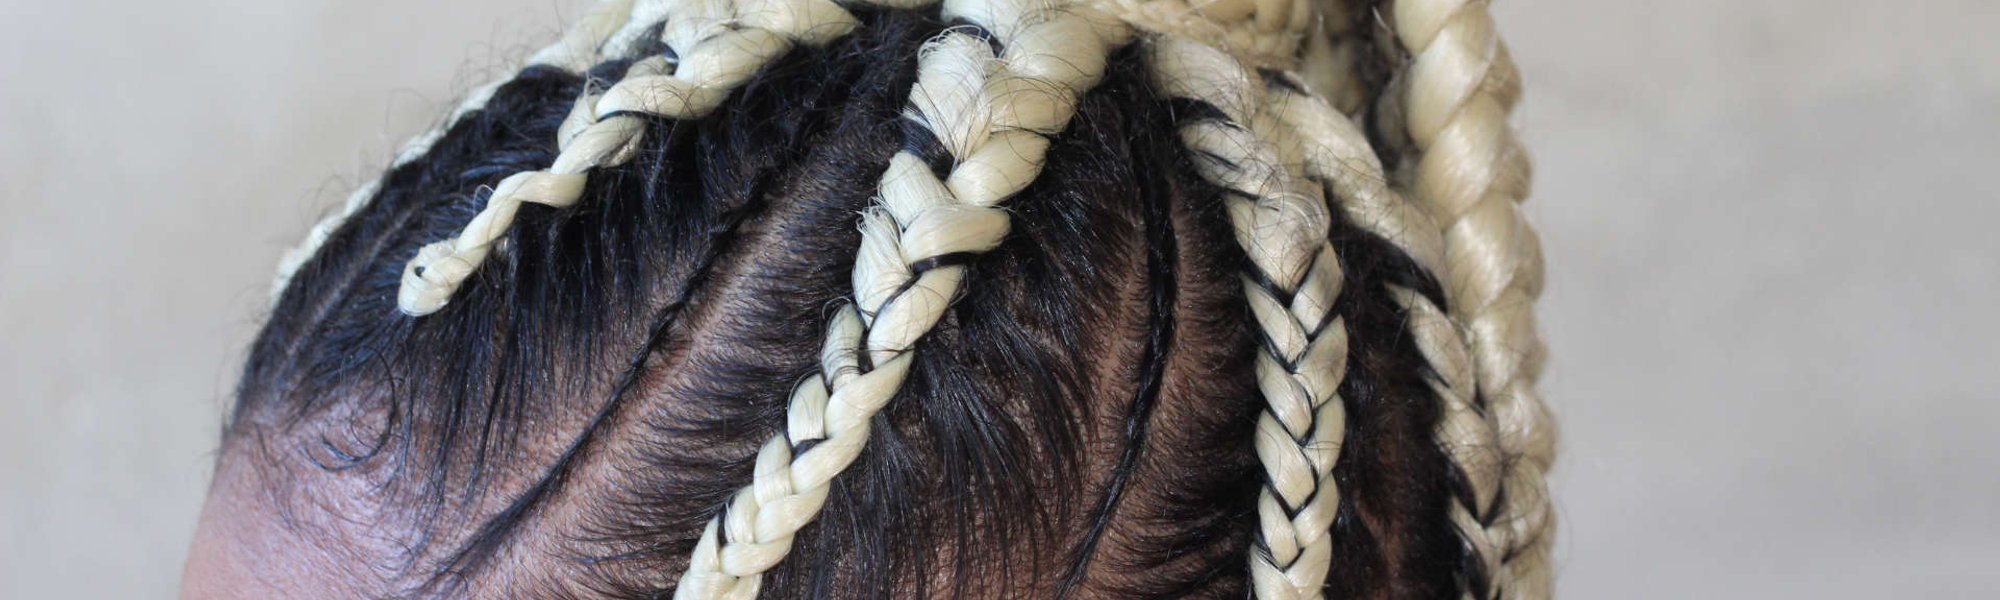 Os 10 penteados para cabelos cacheados, crespos e com box braids mais  quentes do momento segundo o Pinterest | L'Oréal Paris